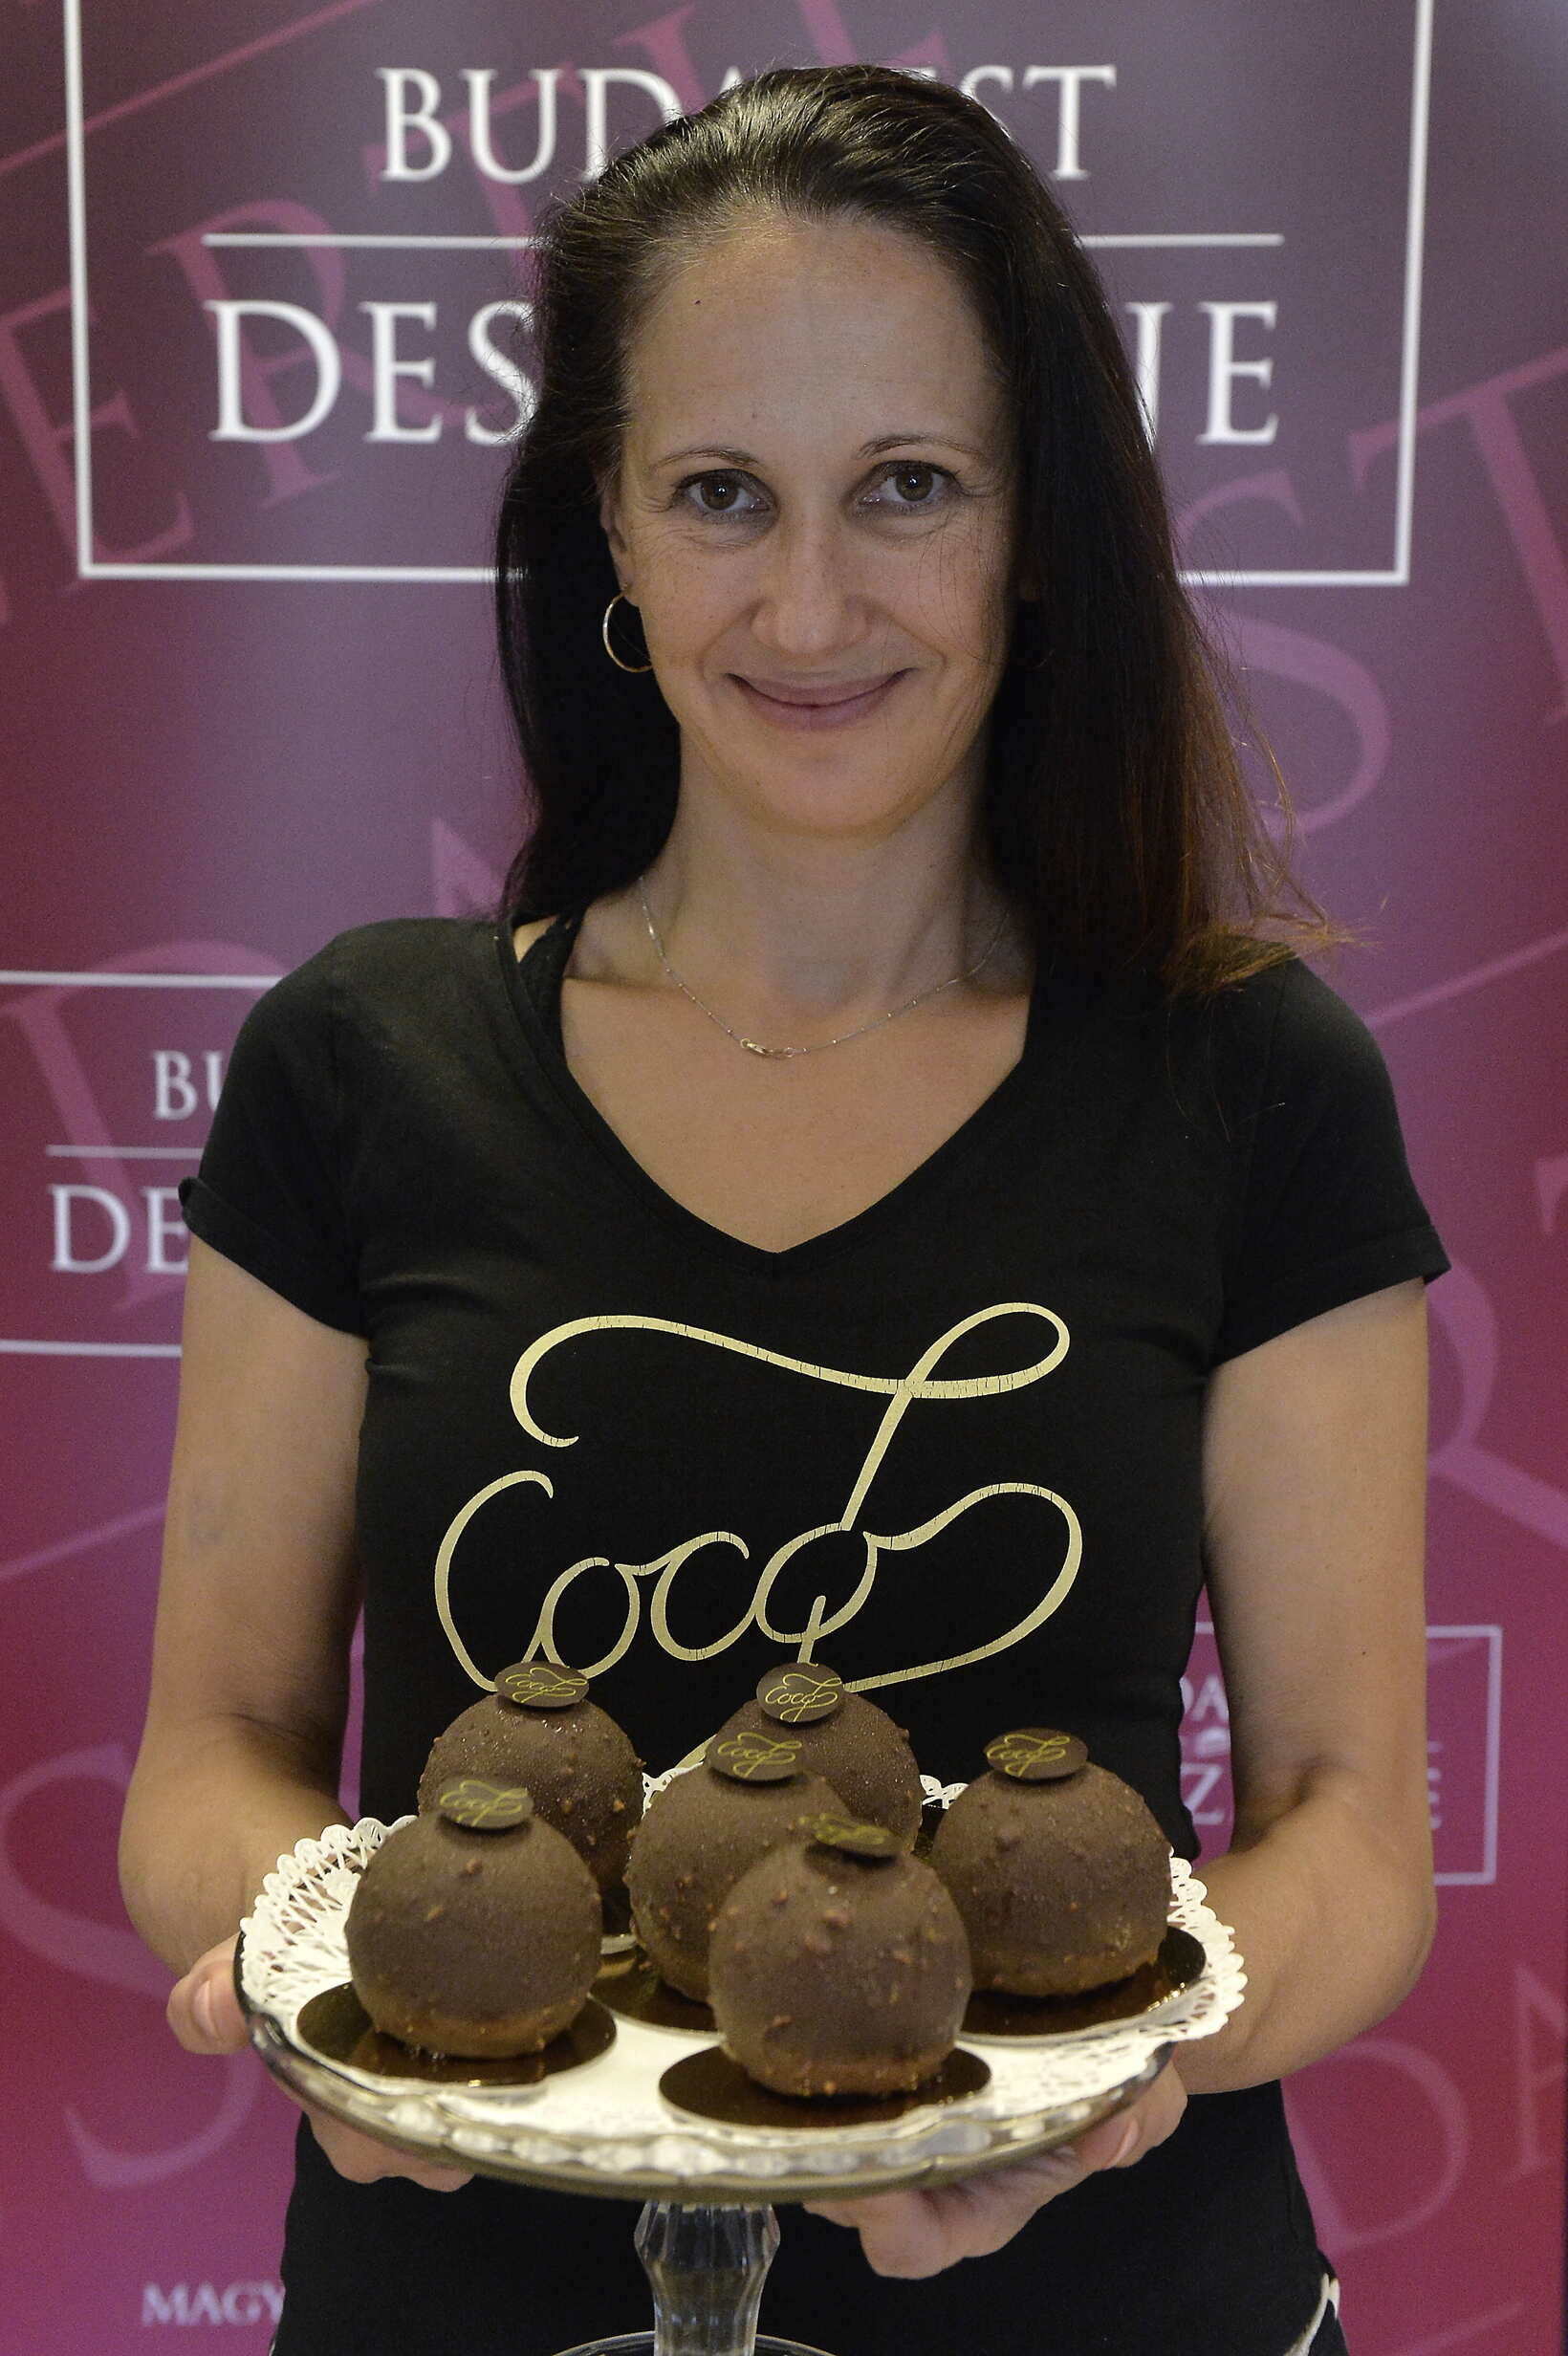 ブダペストのデザート - Coco7 - チョコレート - ショップ - ケーキ - 食品